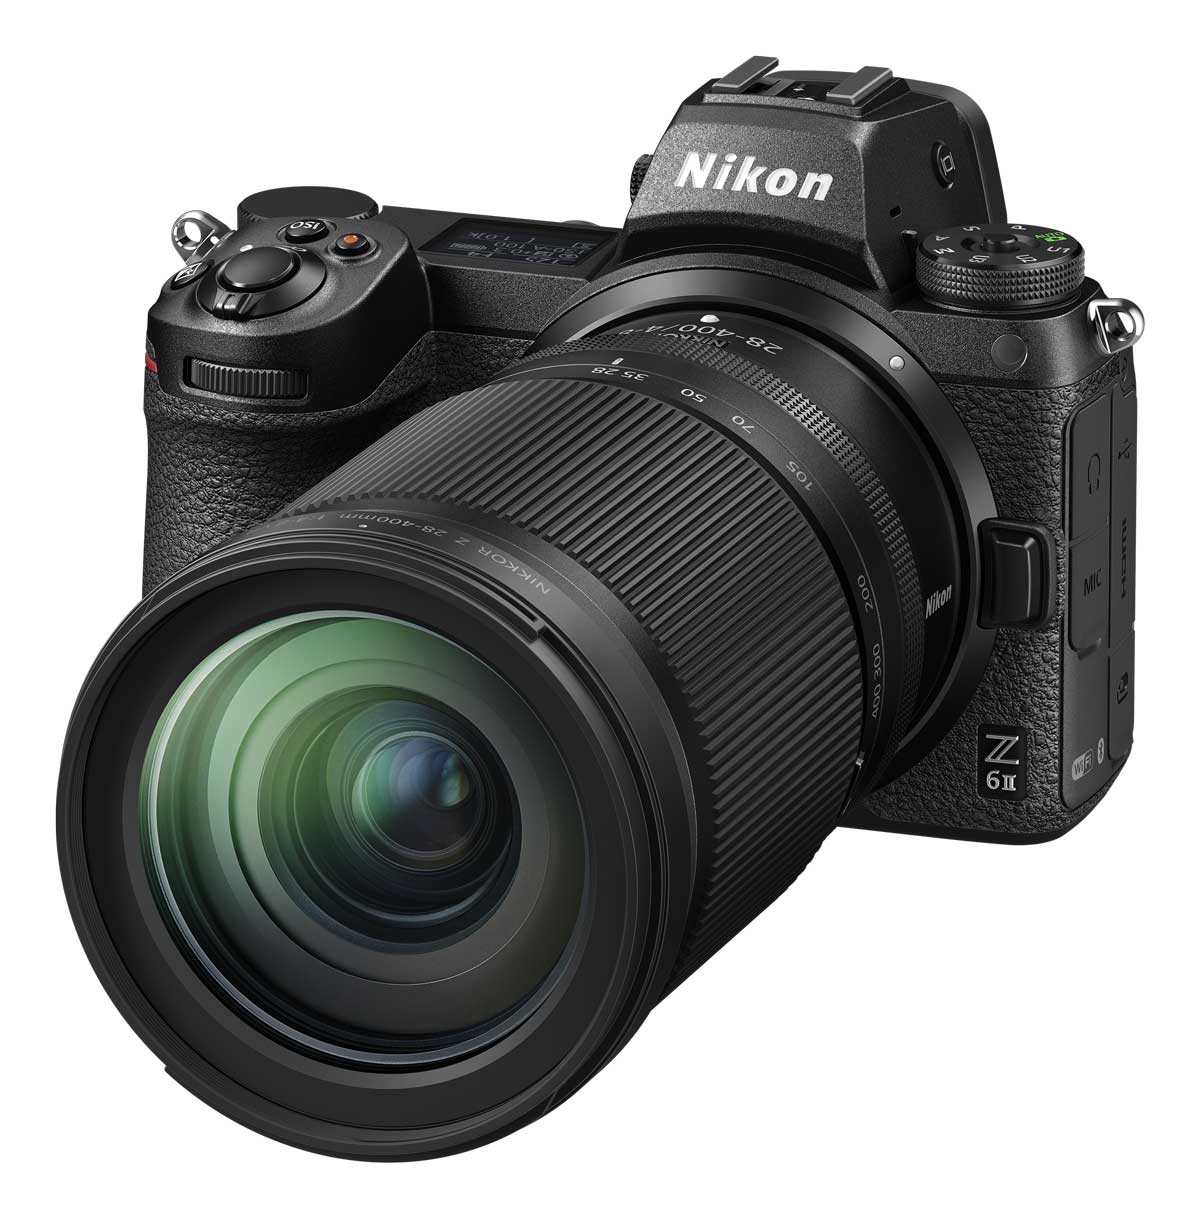 Nikkor Z 28-400mm superzoom lens attached to Nikon Z 6 II camera